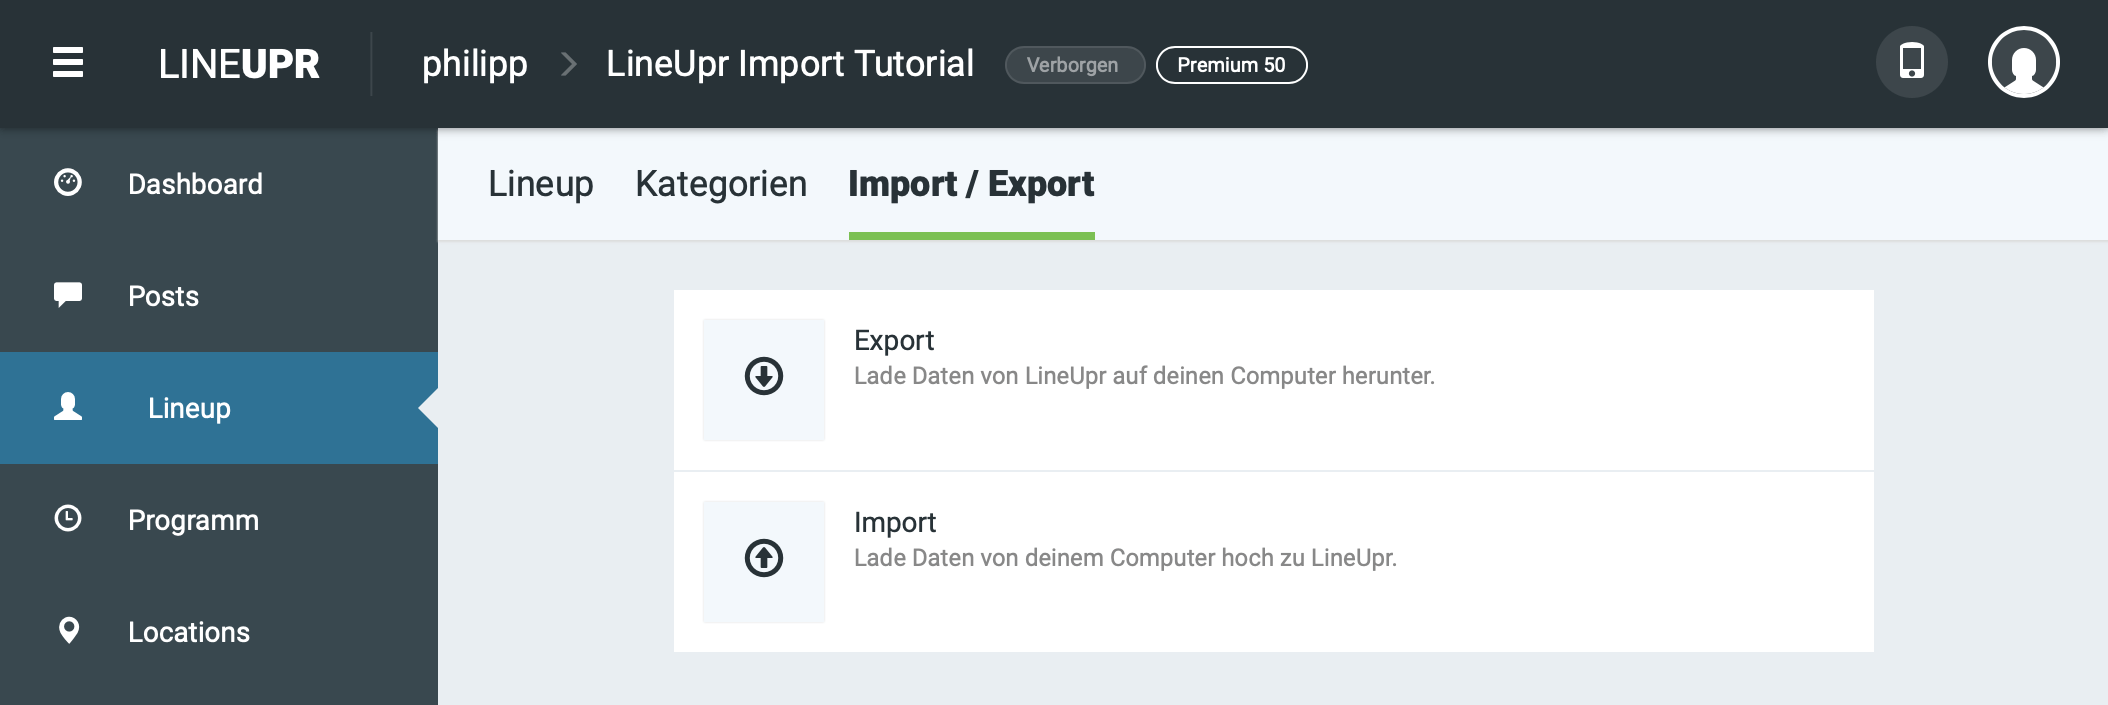 Schaltfläche für Export-Funktion